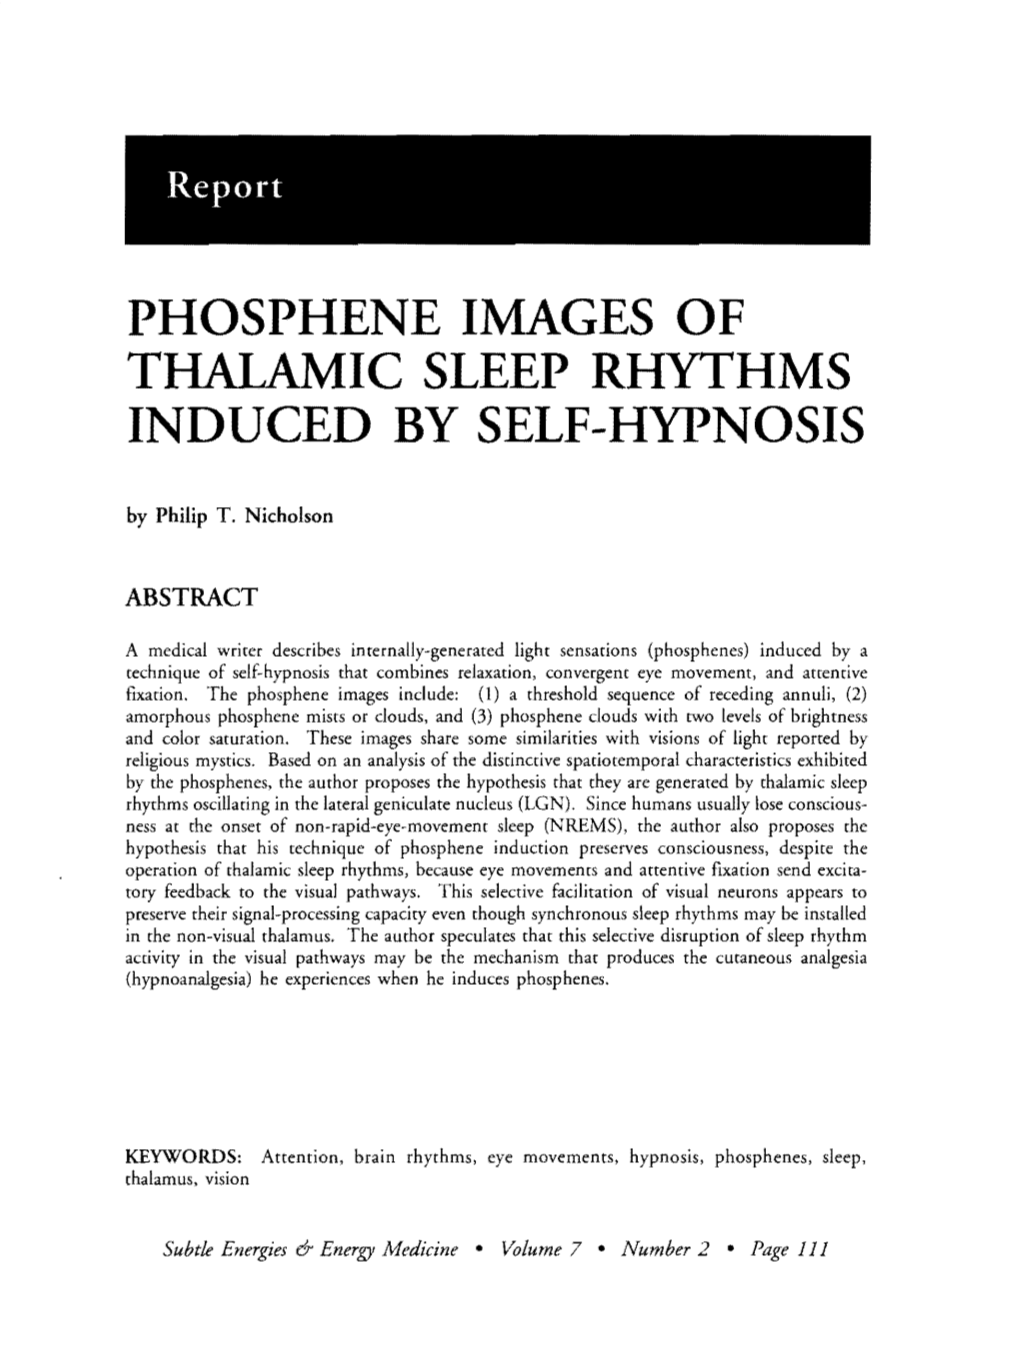 Phosphene Images of Thalamic Sleep Rhythms Induced by Self-Hypnosis